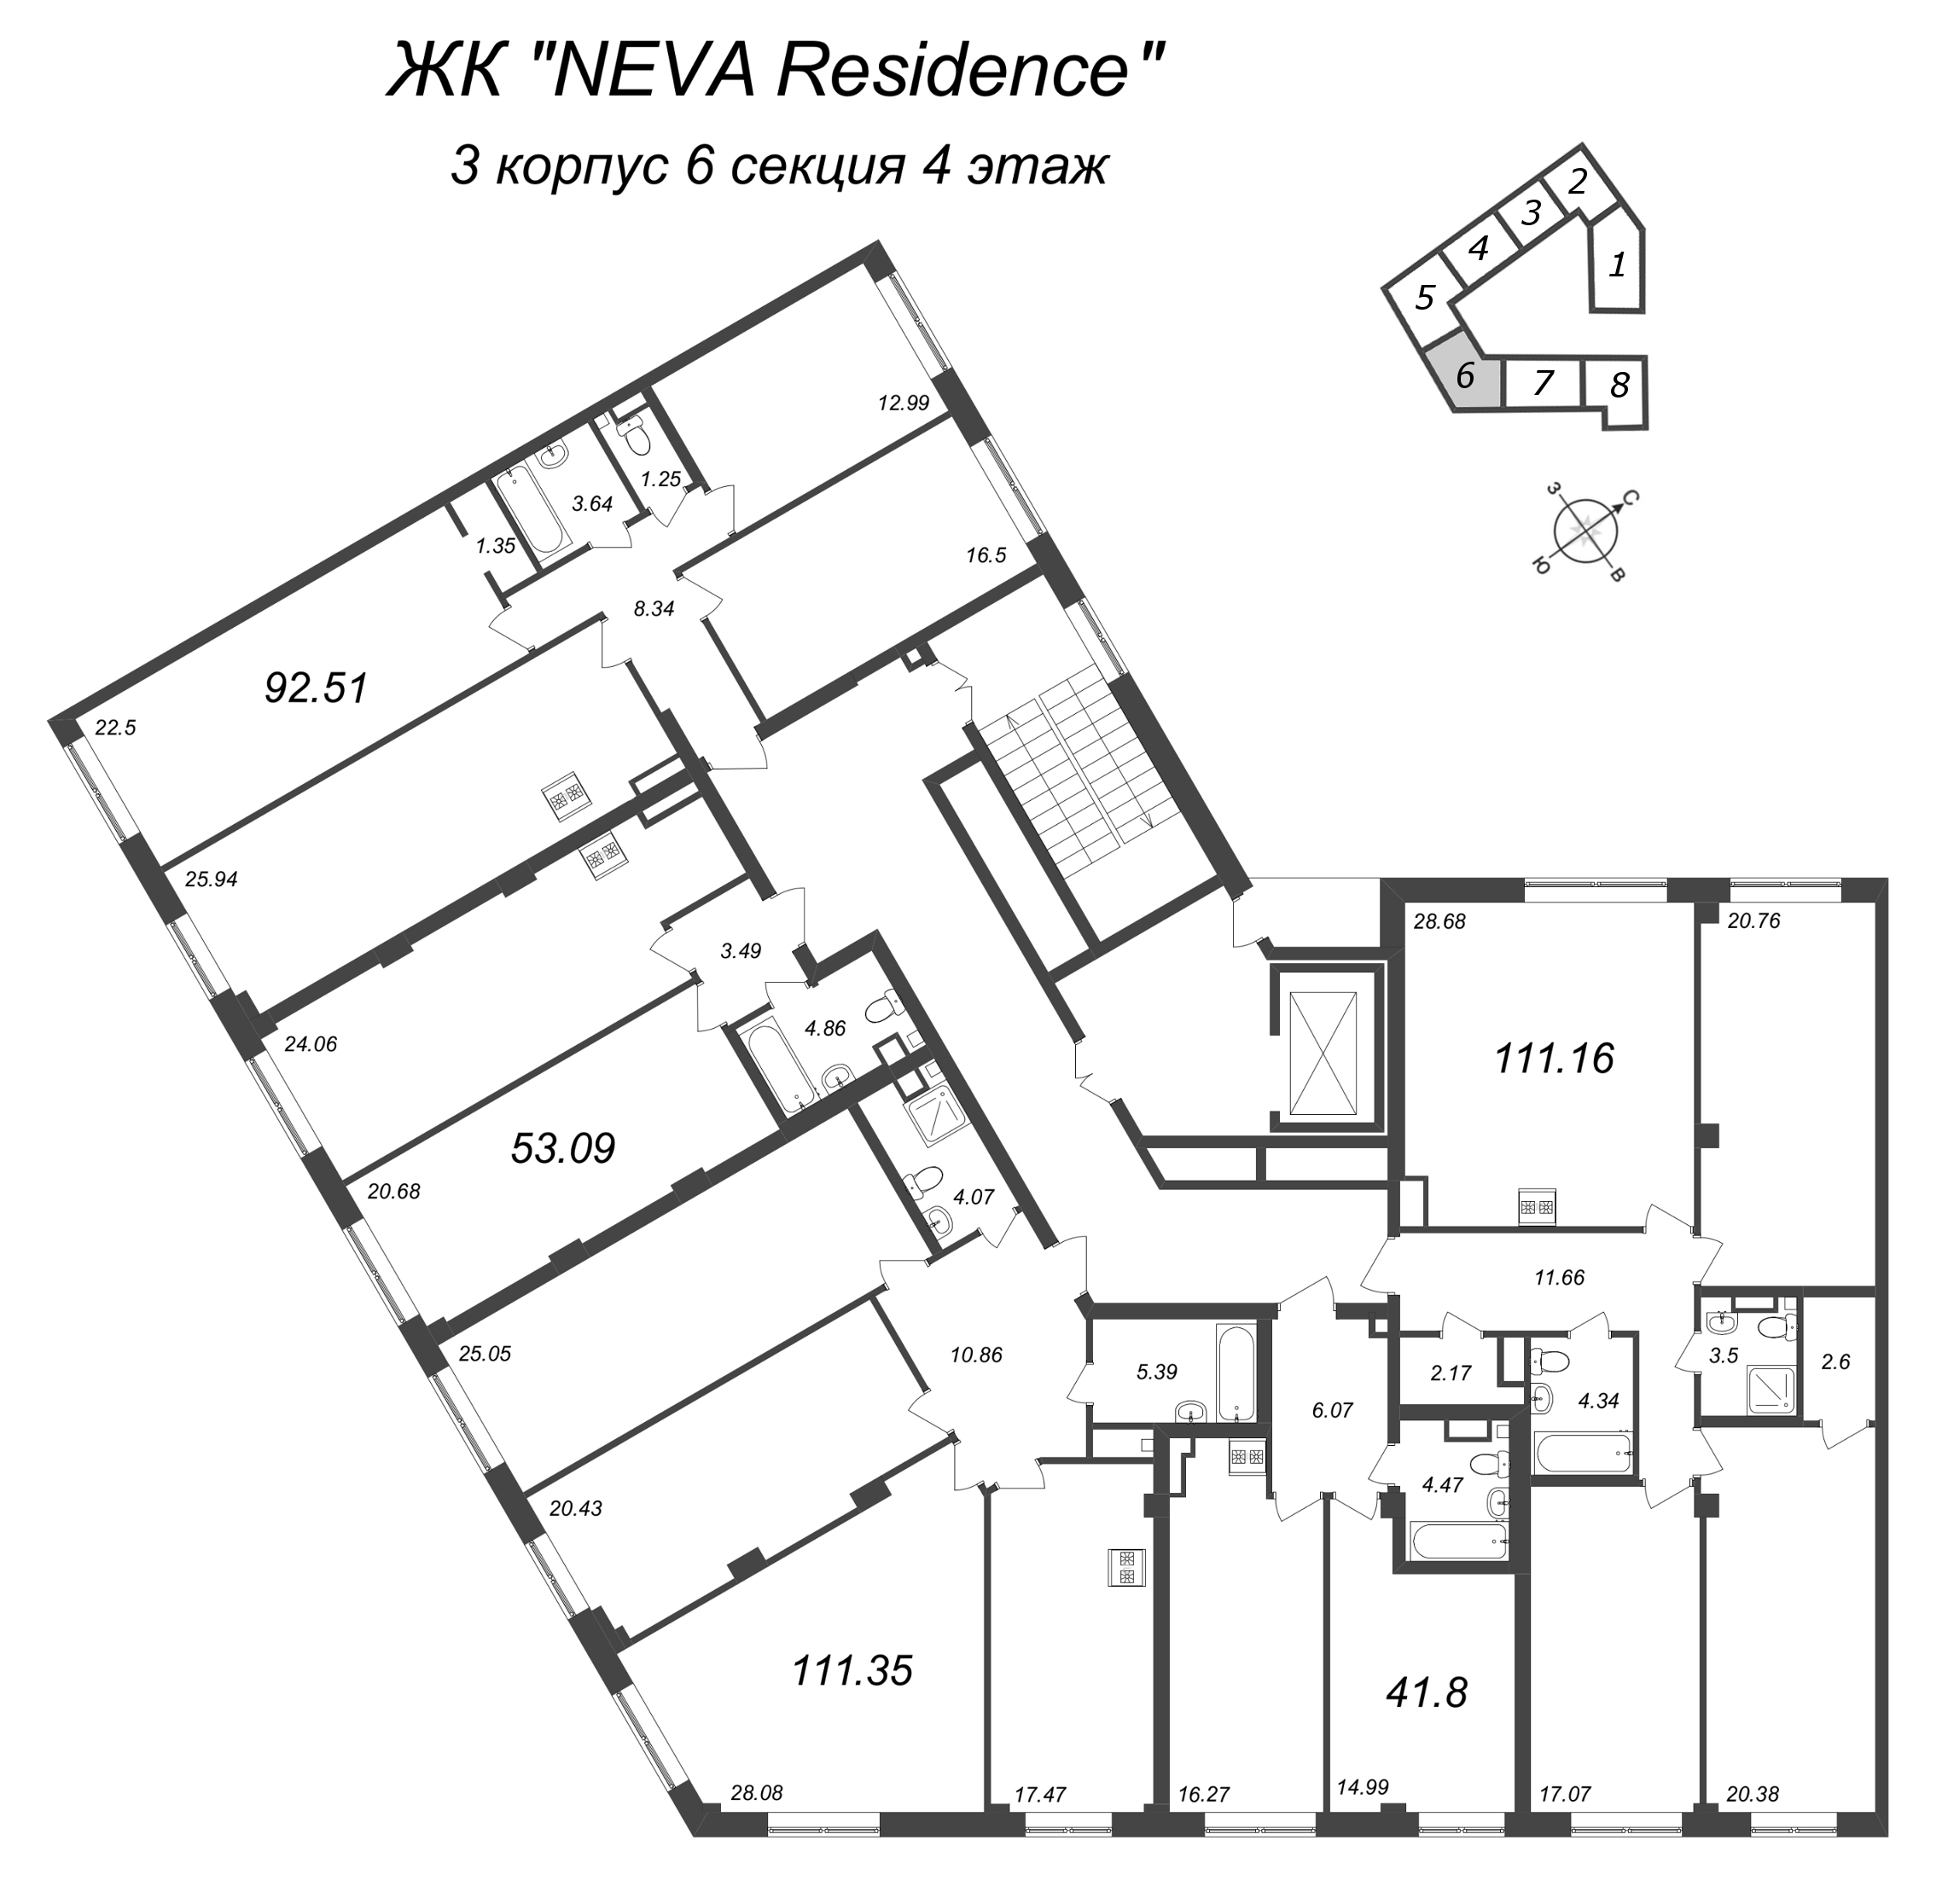 4-комнатная (Евро) квартира, 92.51 м² в ЖК "Neva Residence" - планировка этажа